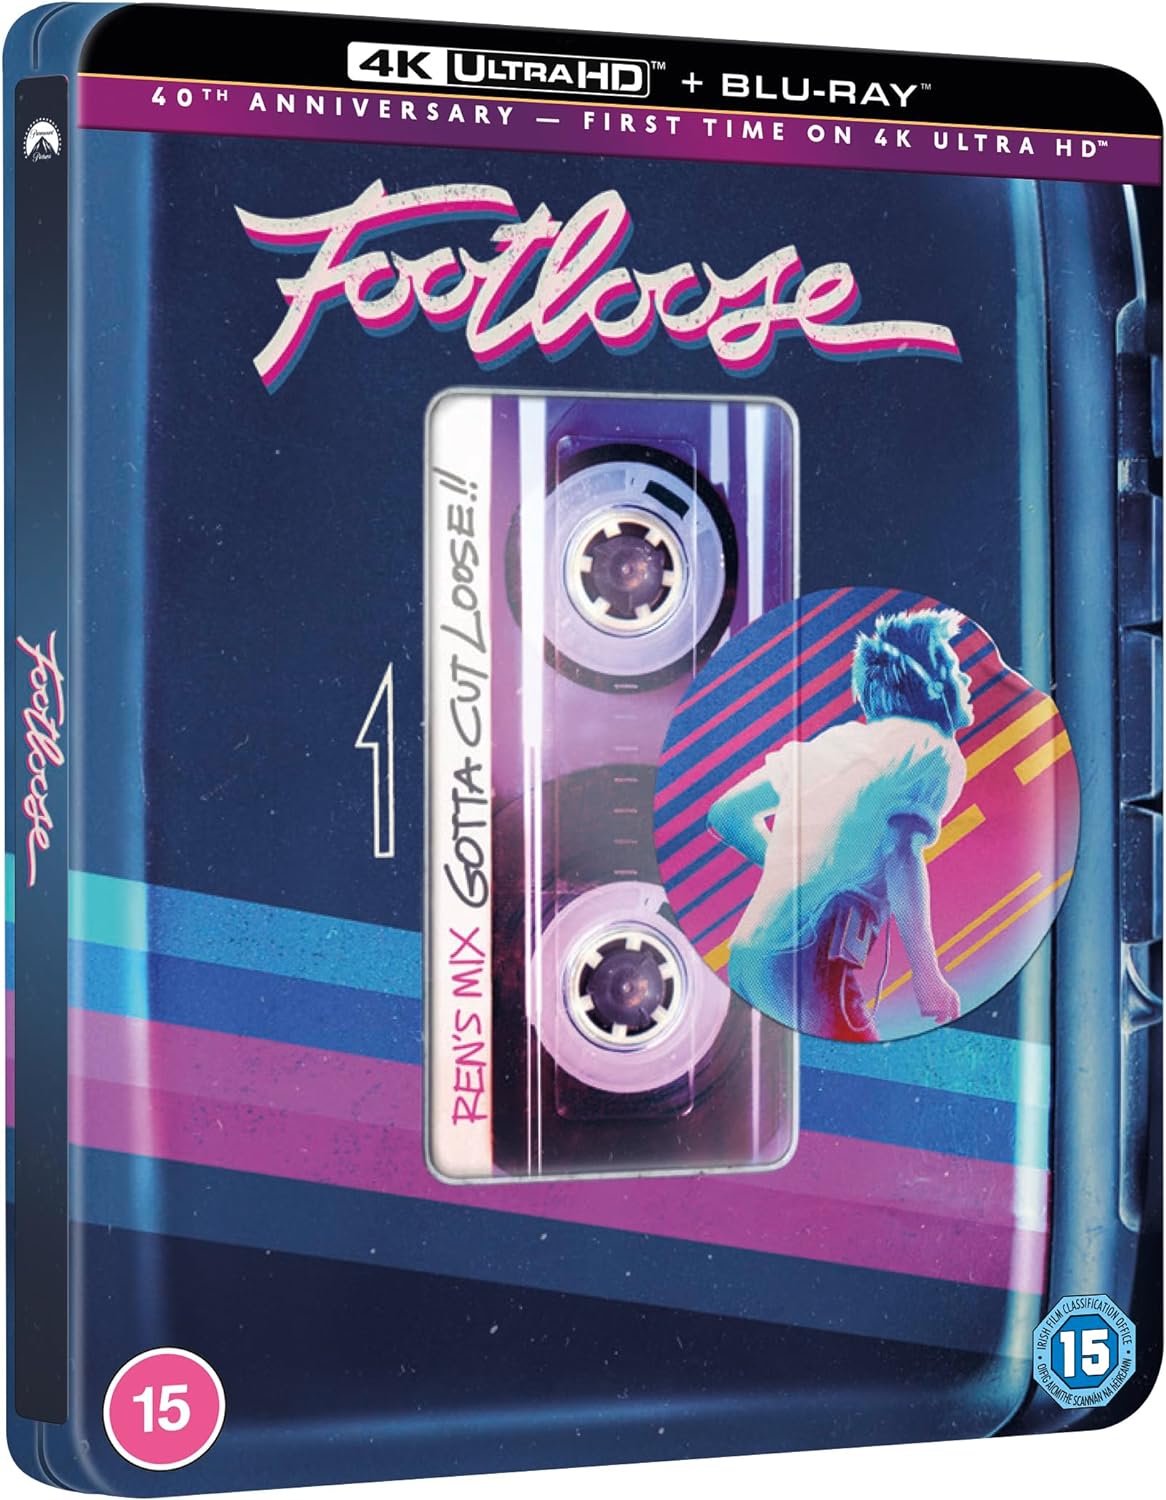 Footloose [Steelbook] [4K UHD] [UK]